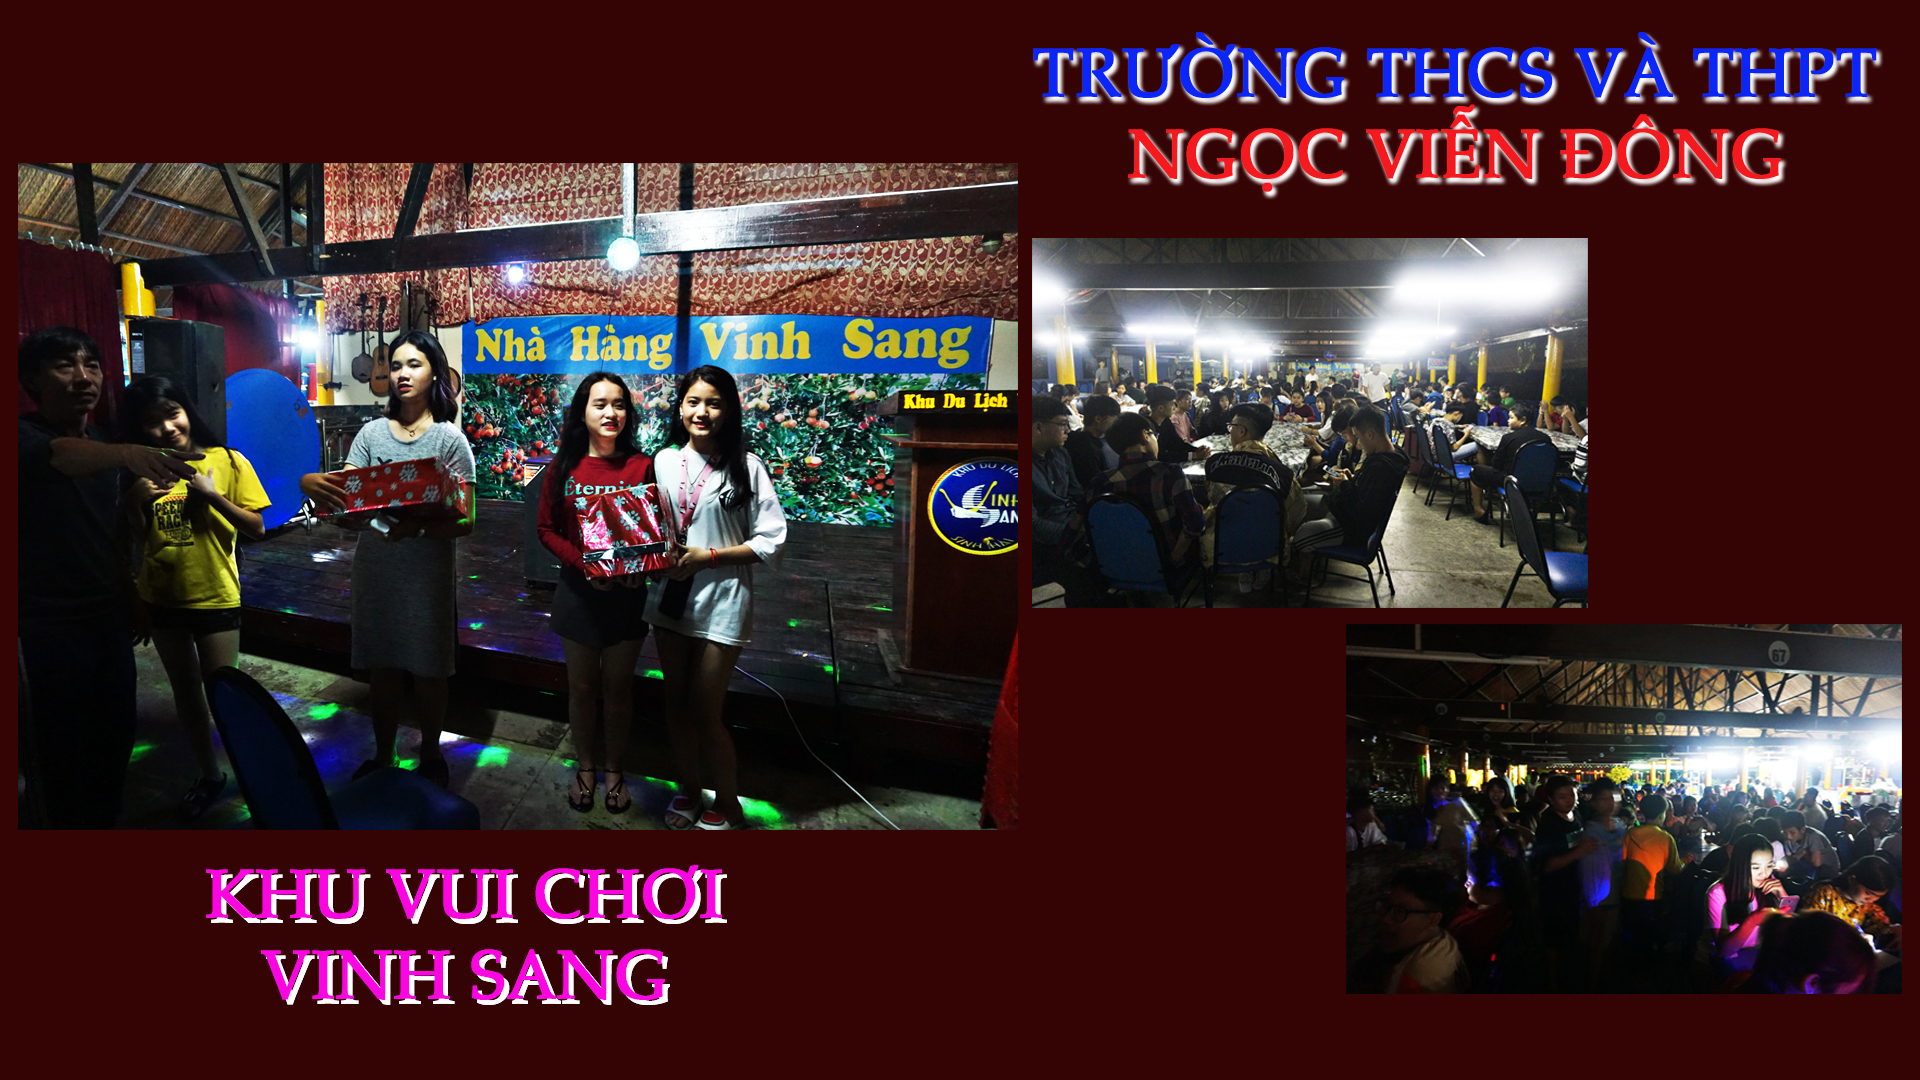 Đêm gala tại khu du lịch Vinh Sang trong chuyến học tập trải nghiệm thực tiễn của trường THCS và THPT Ngọc Viễn Đông